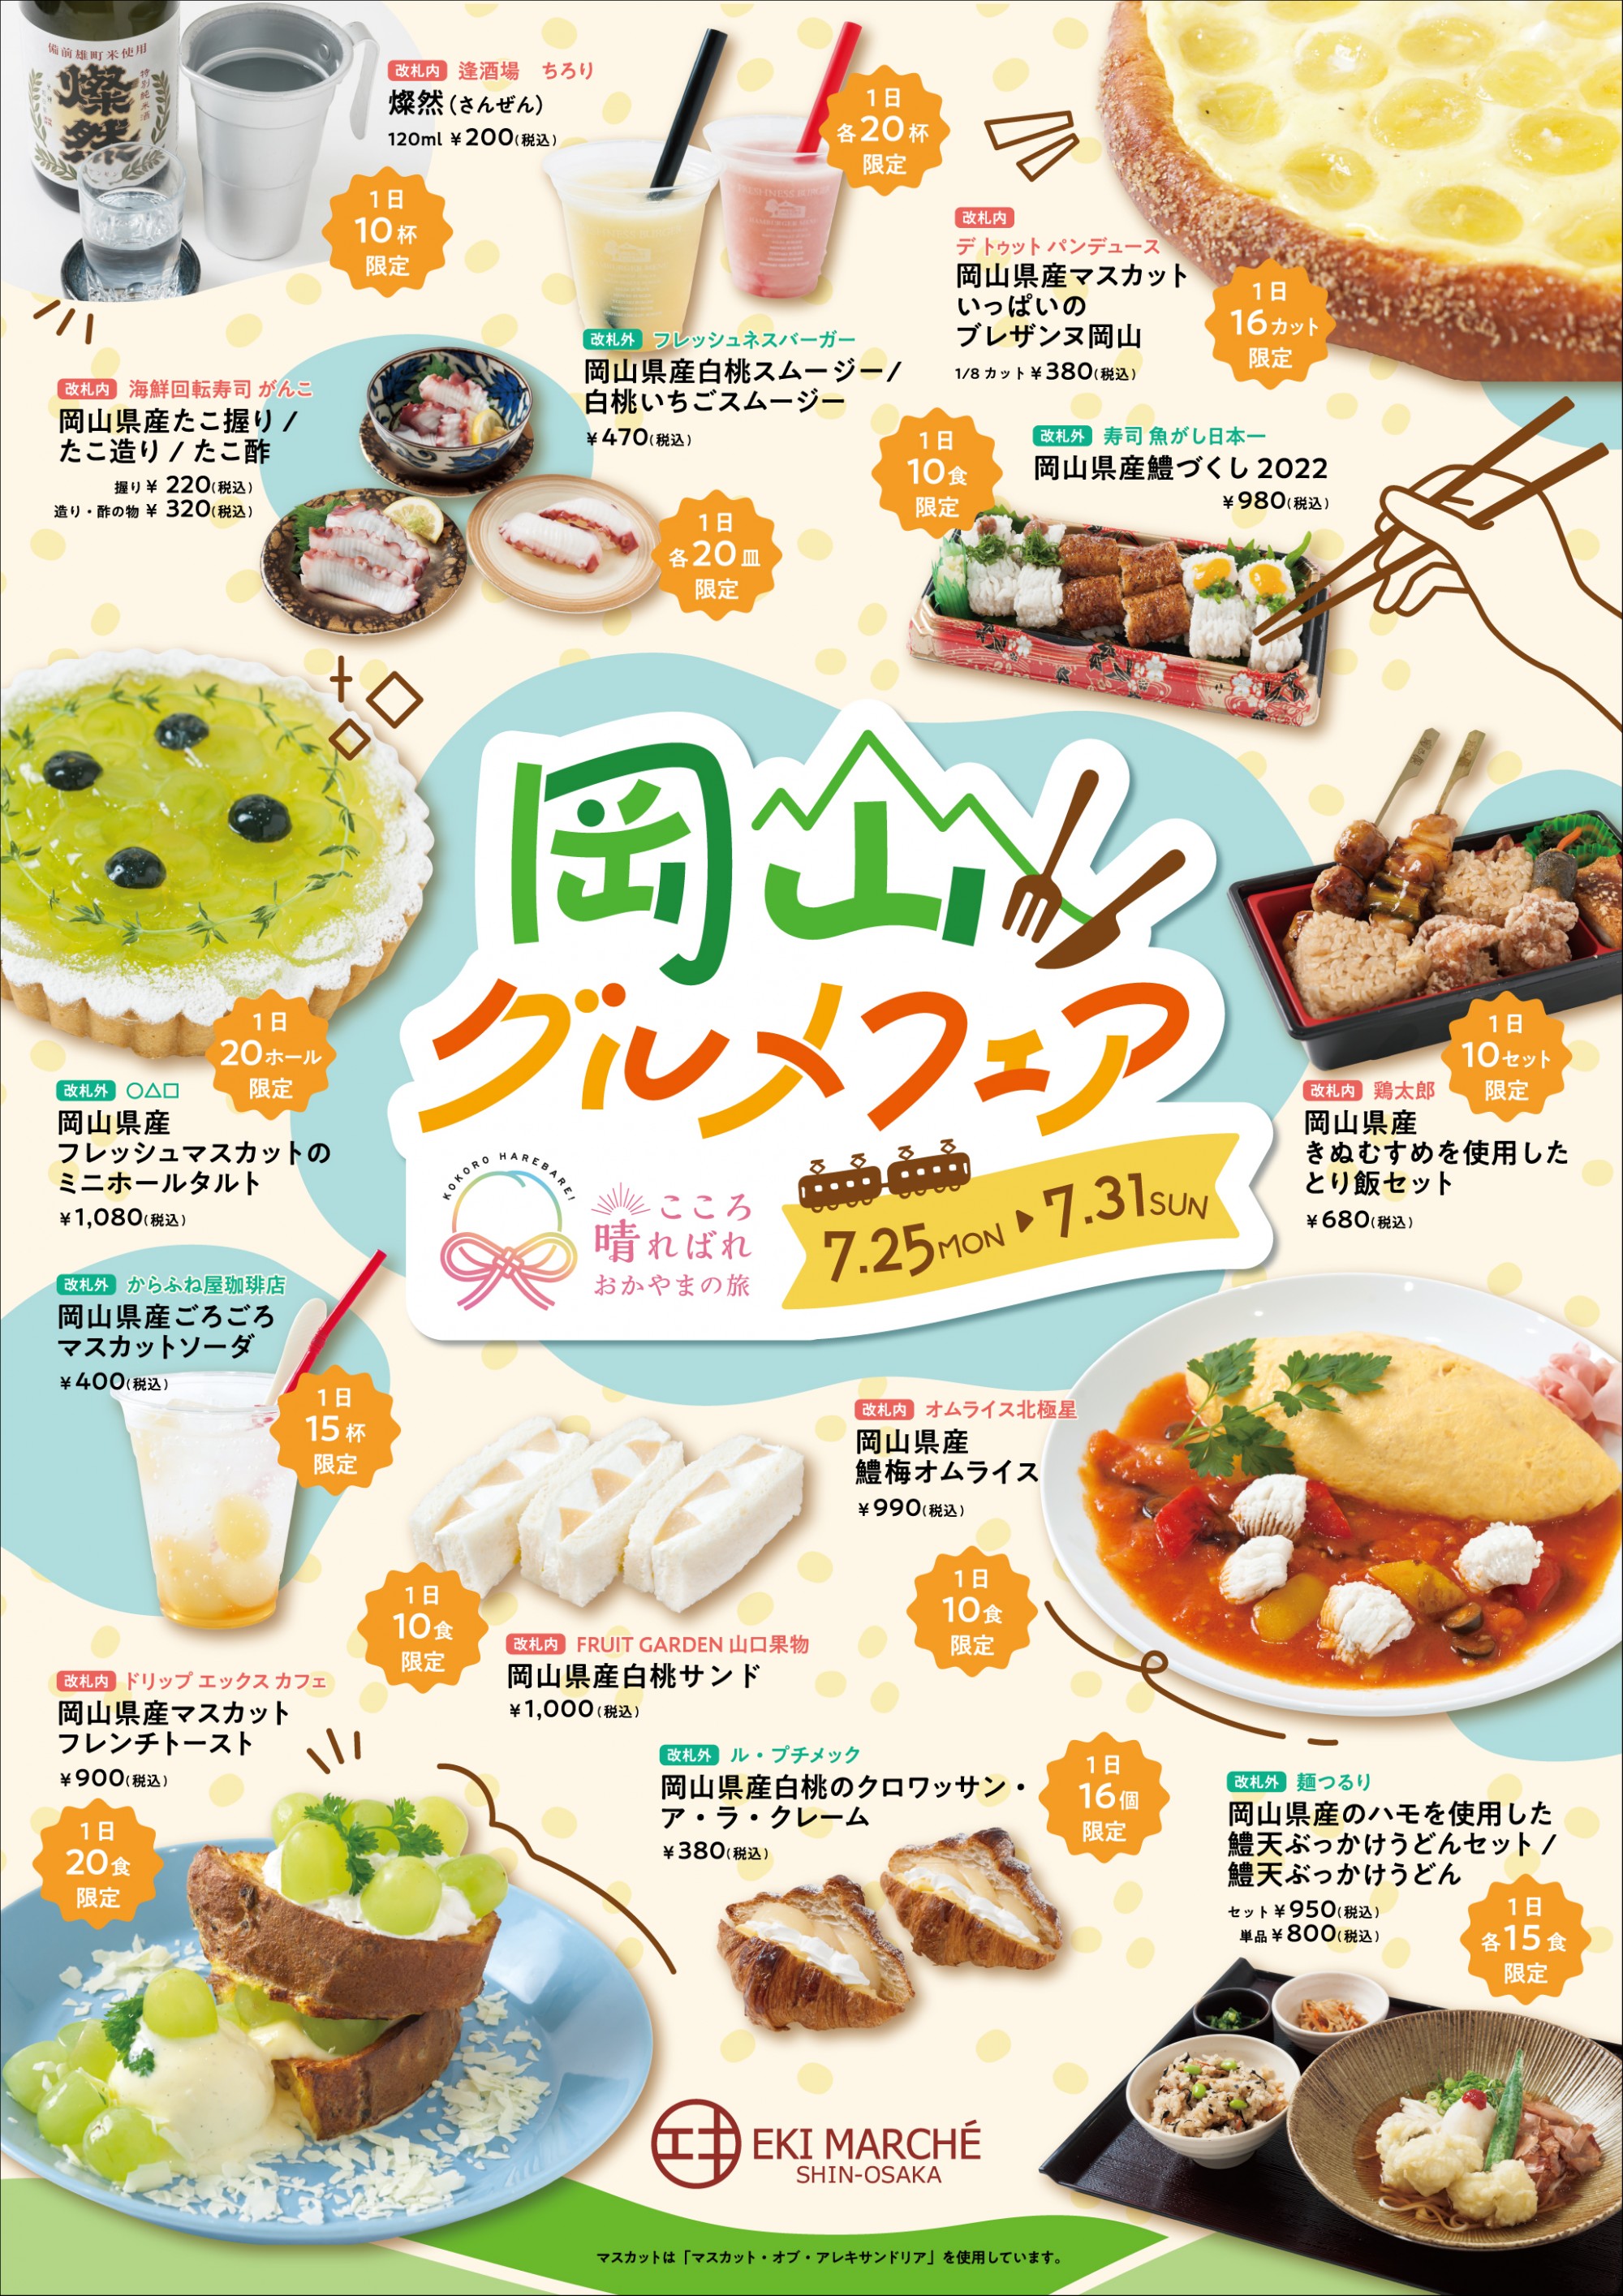 ご当地食材を使った岡山グルメフェアを開催 7 25 7 31 エキマルシェ新大阪